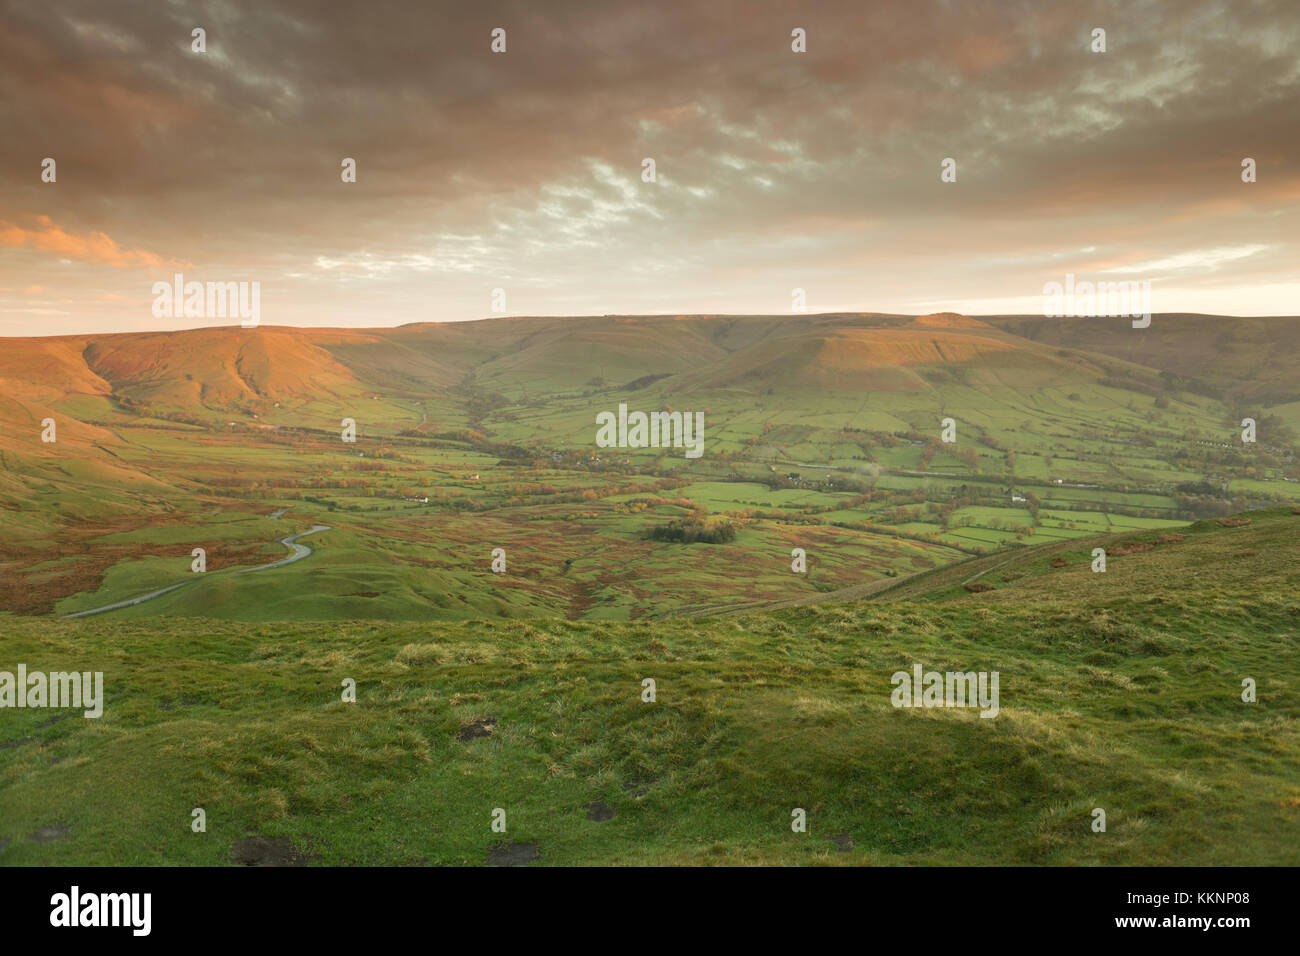 UK, Mam Tor, die Aussicht von Mam Tor in Richtung Edale, bei Sonnenaufgang. Stockfoto